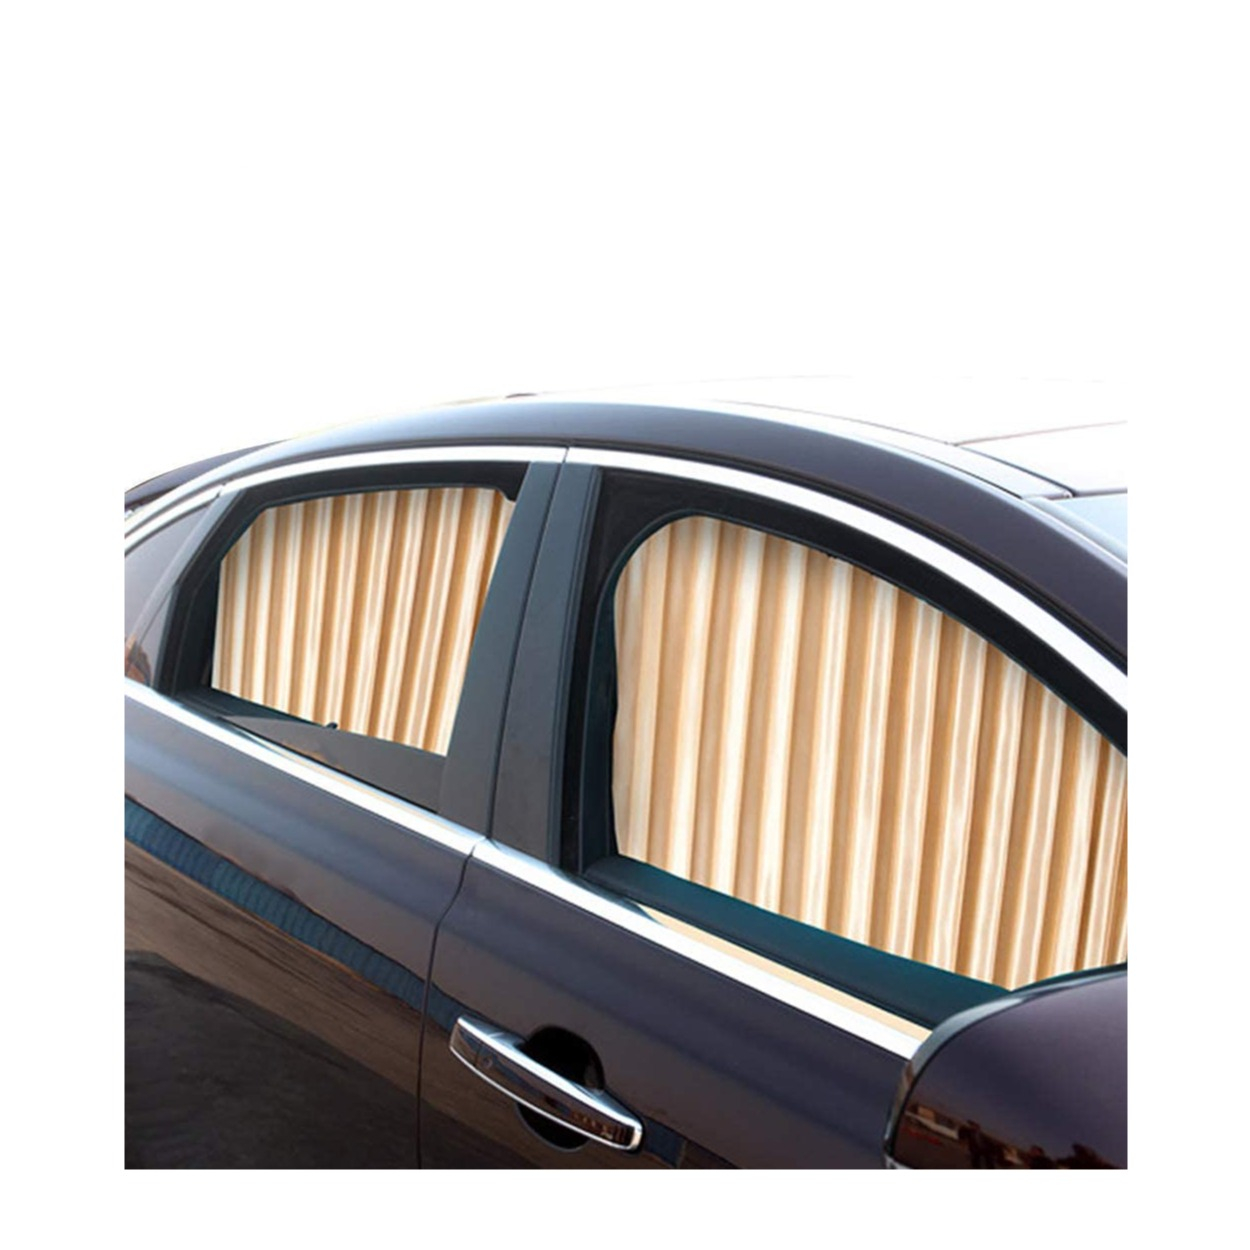 Kaufe Pdtoweb 50x47cm Auto Sonnenschutz Seitenfenster Vorhang Auto  faltbarer UV-Schutz Vorhang